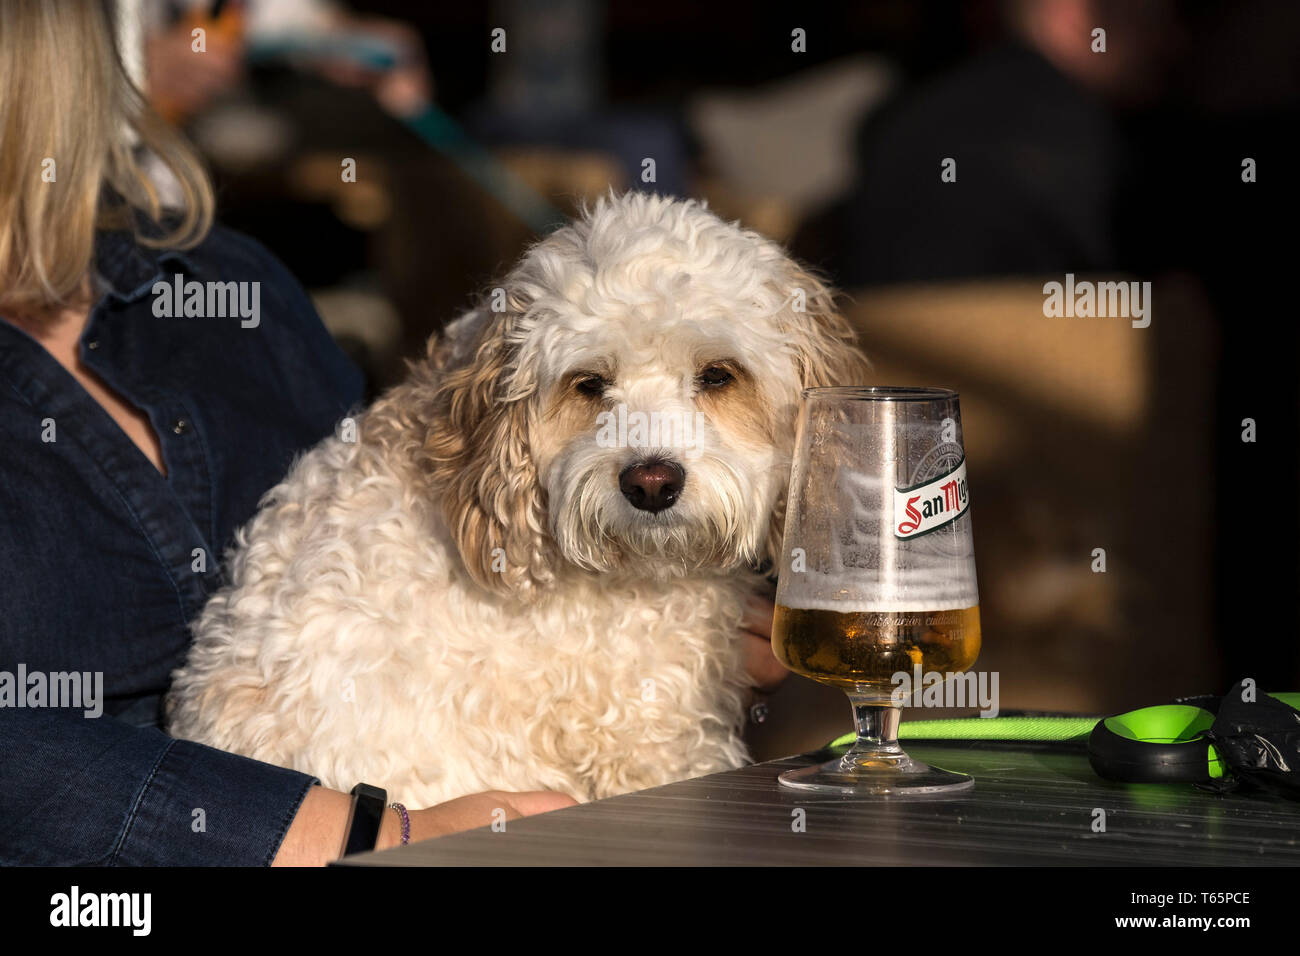 Un ivrogne à chien assis à une table avec une bière San Miguel. Banque D'Images